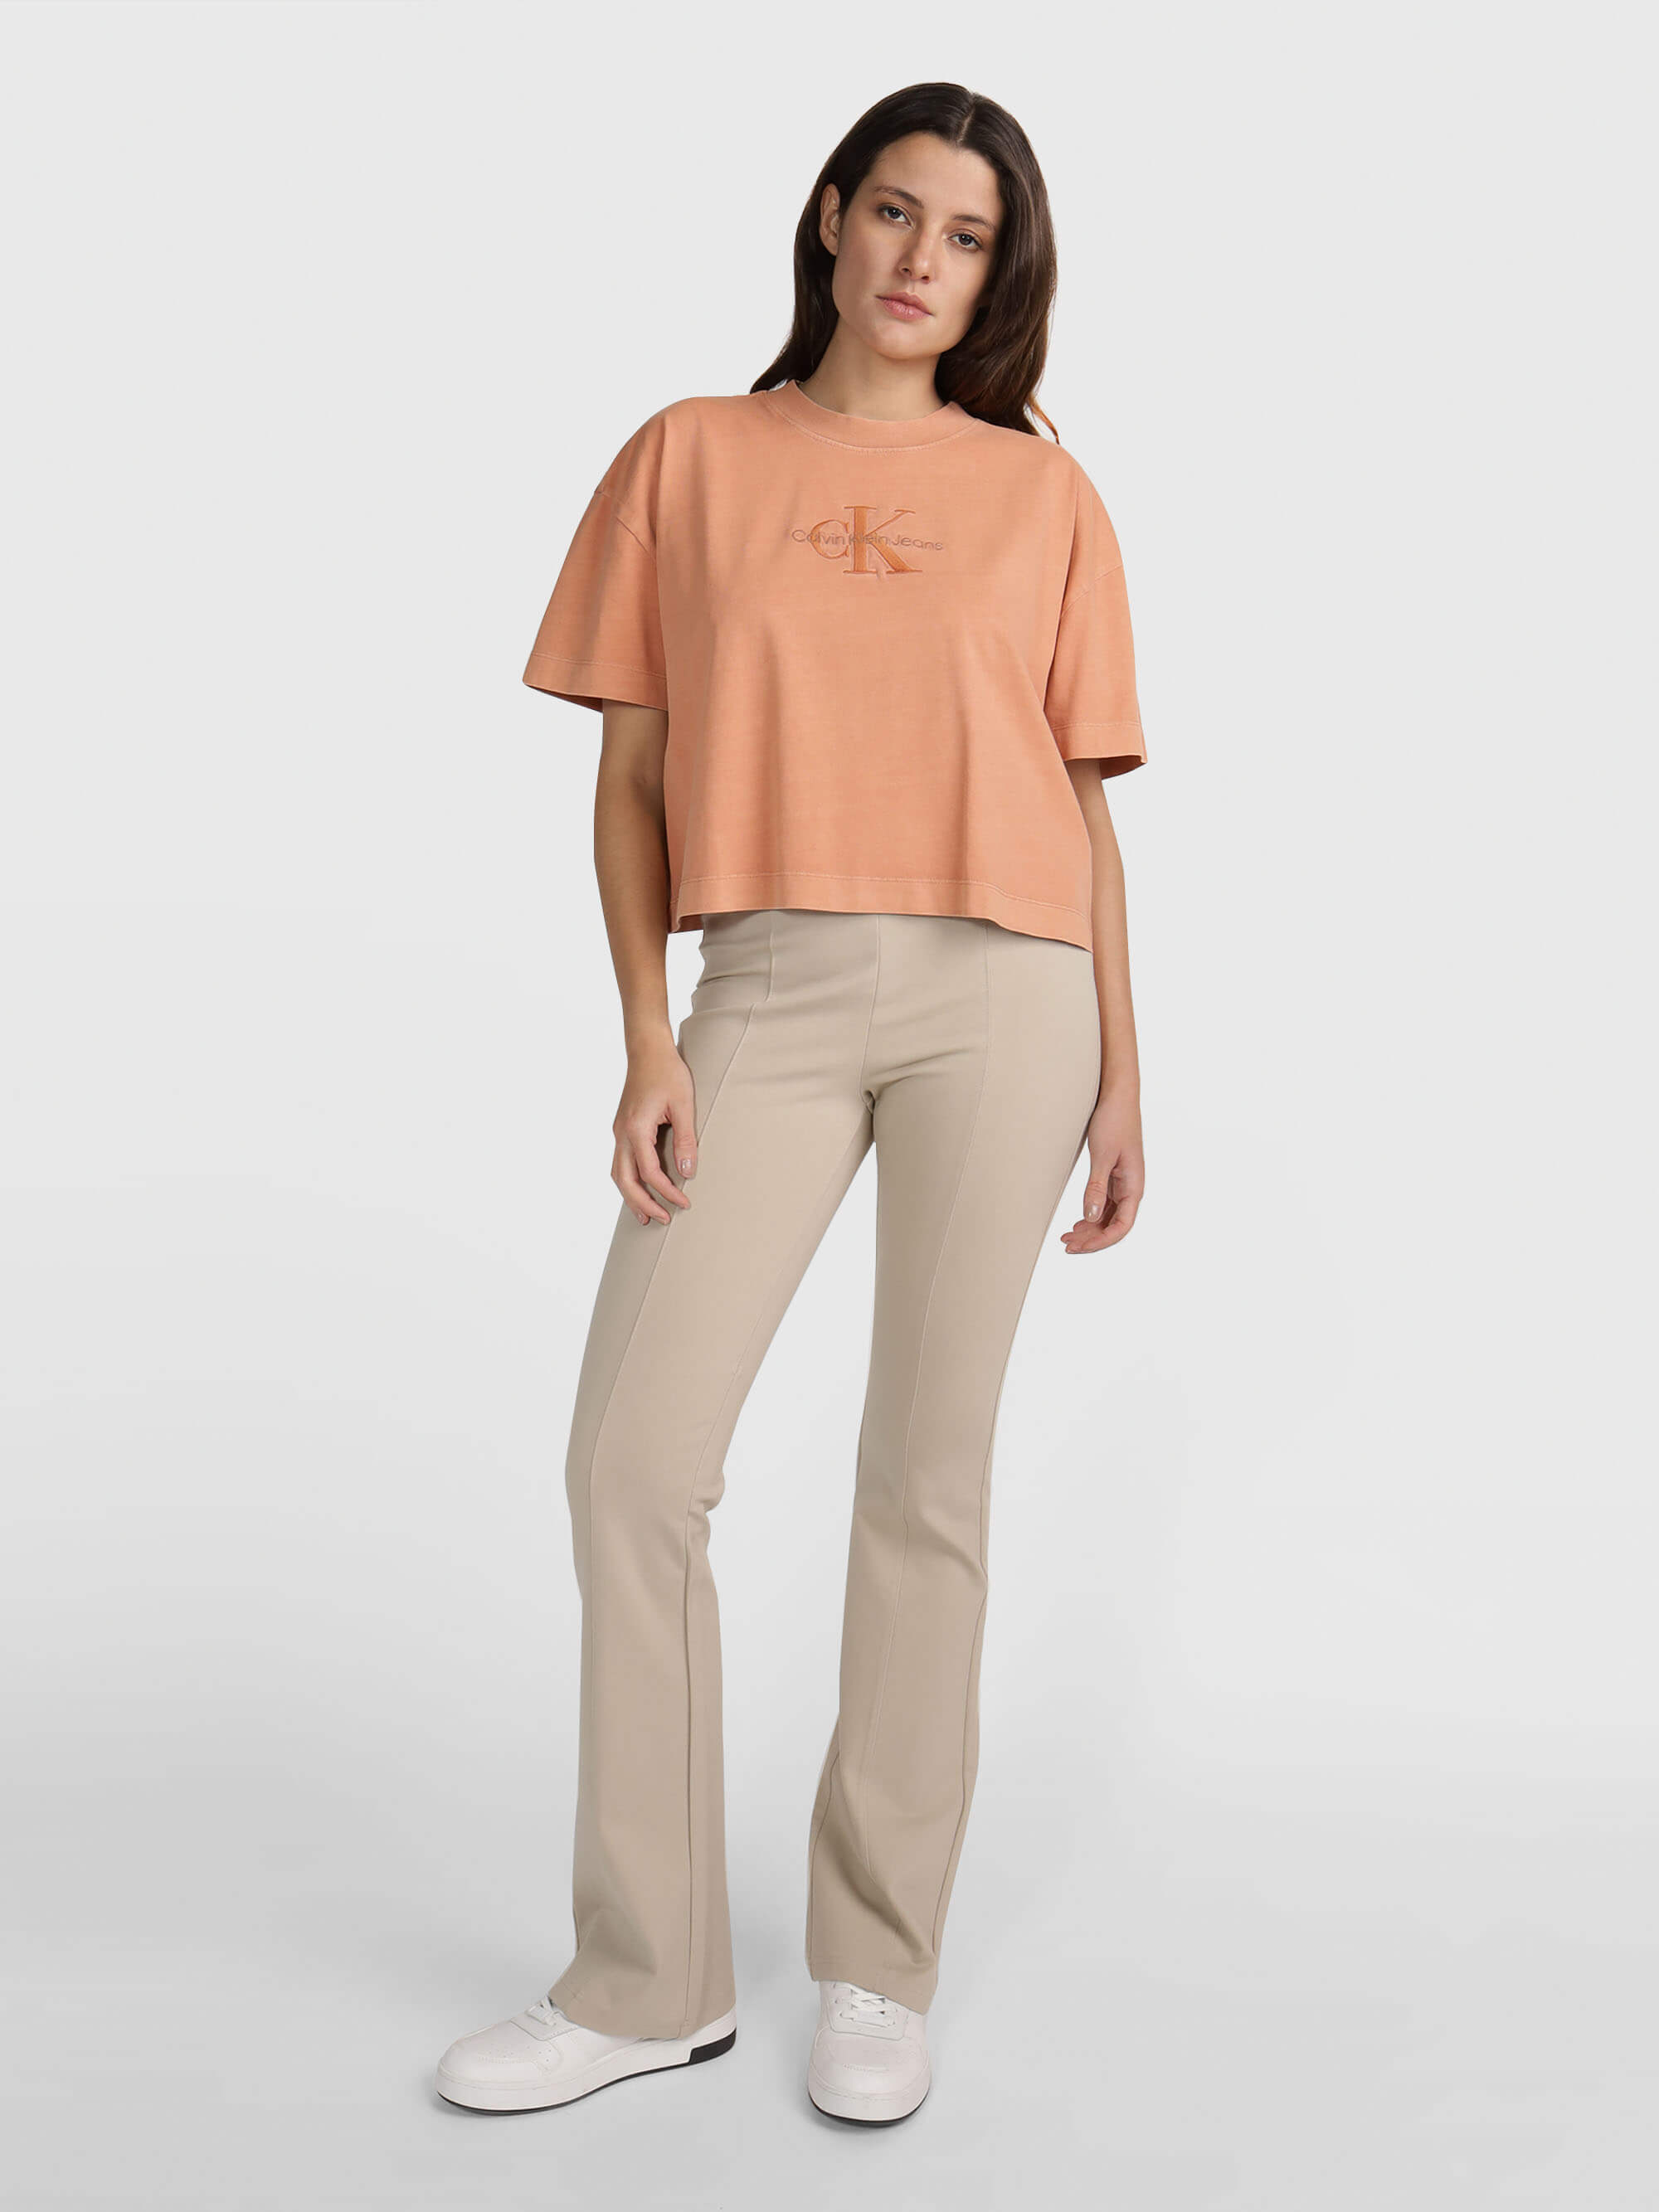 Pantalón Calvin Klein con Logo Mujer Beige